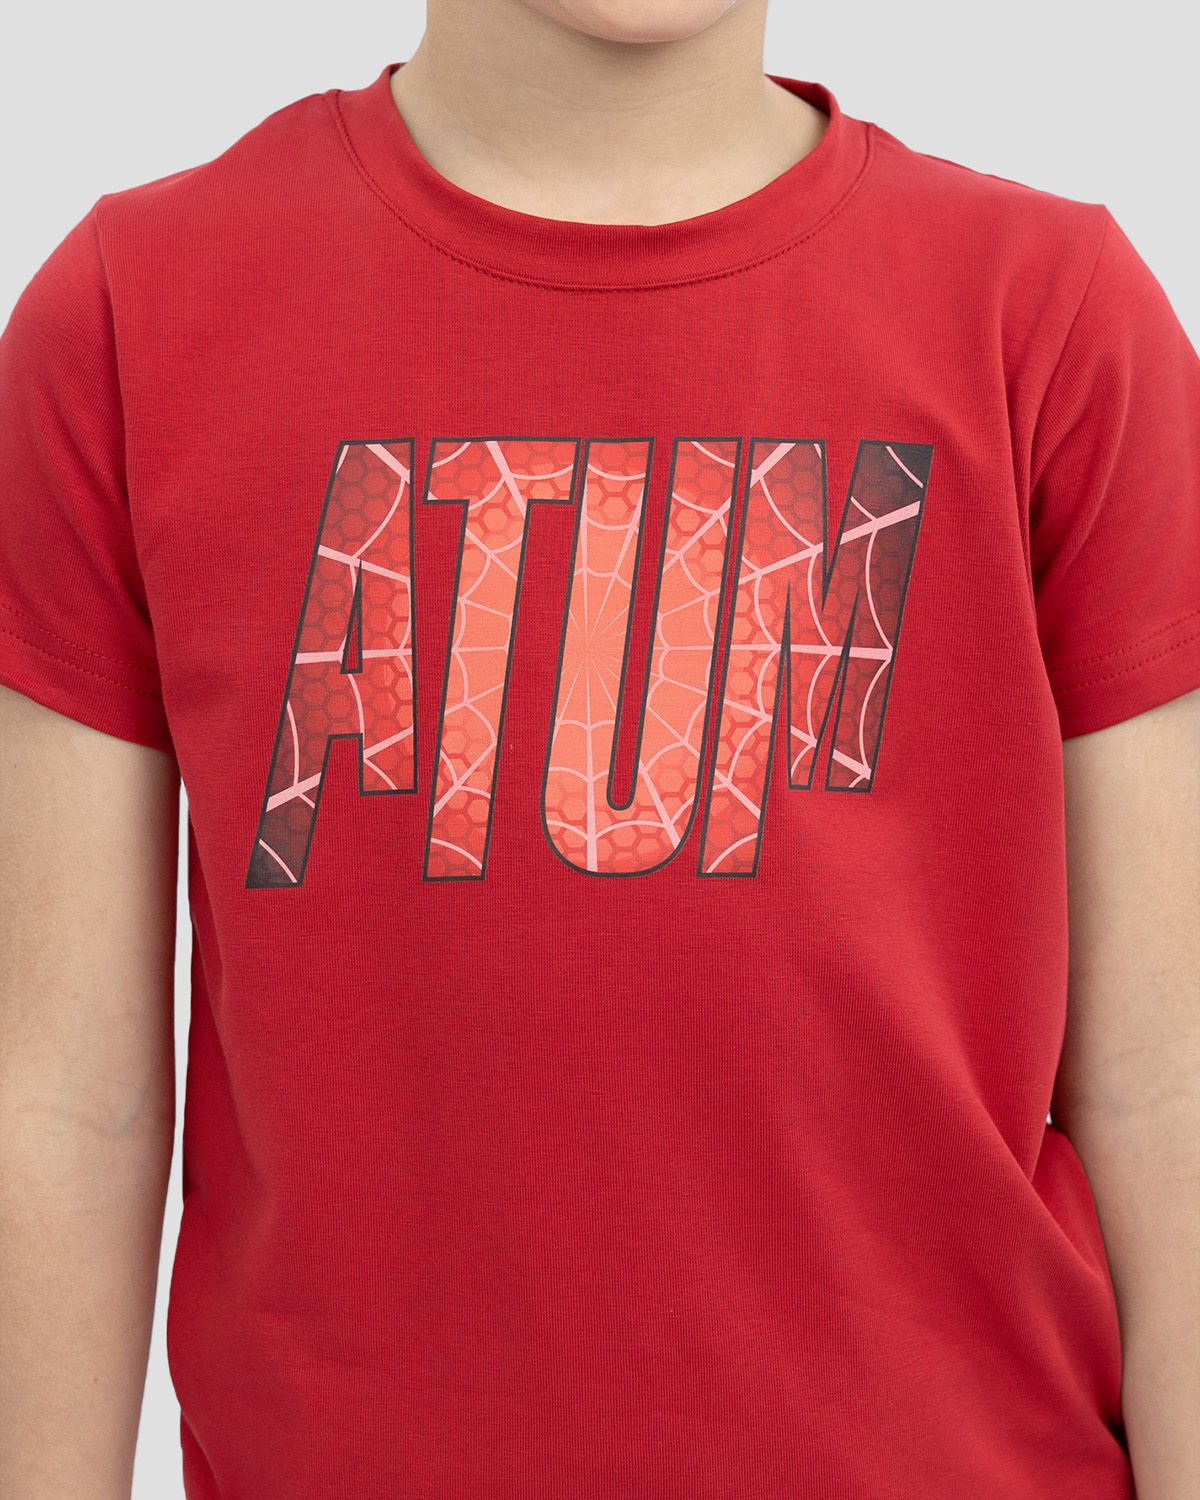 Atum Kides Super Hero T-shirts - Atum Egypt #